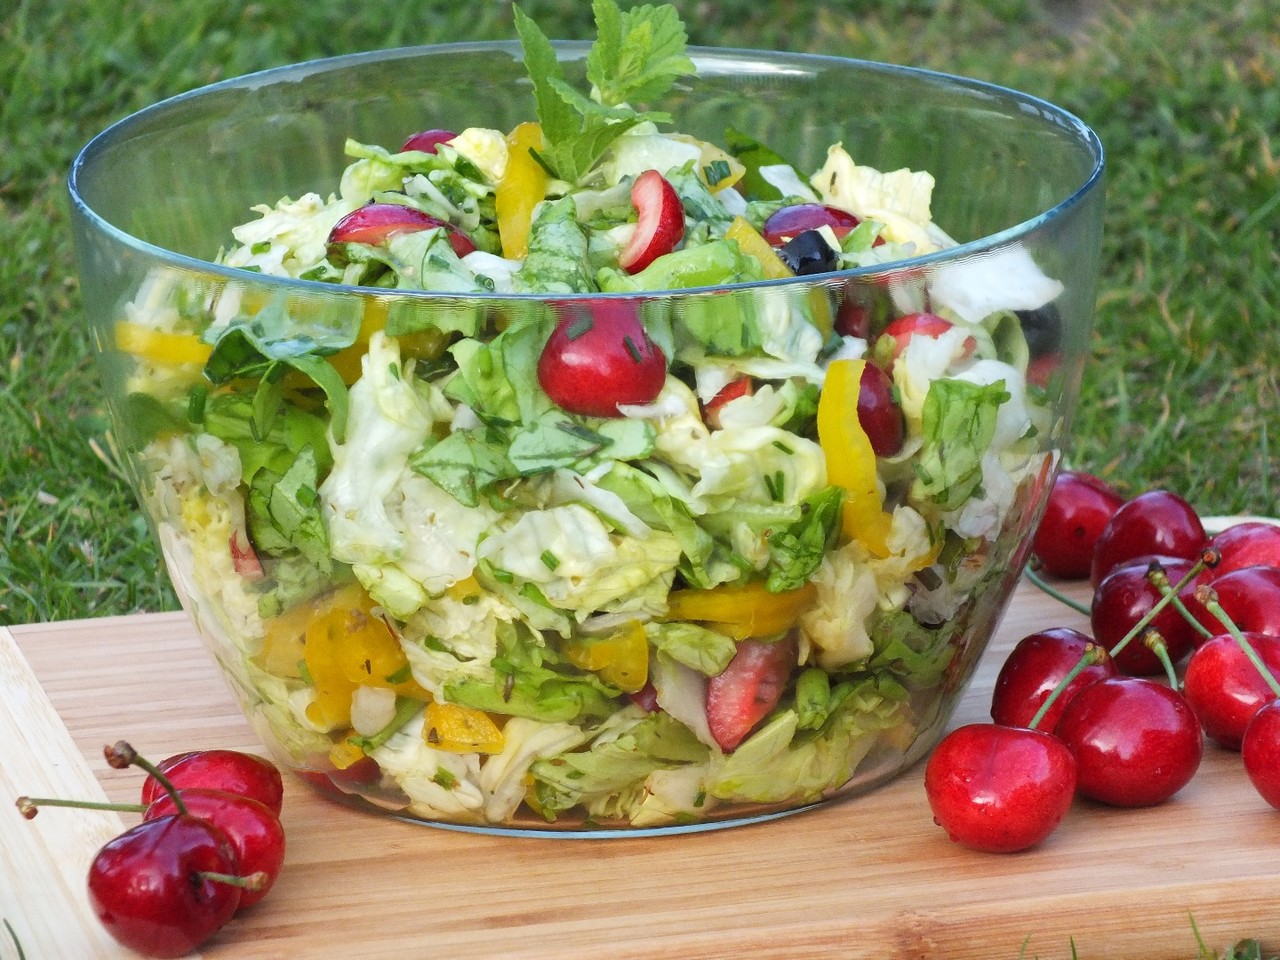 Салат на природу к шашлыку рецепты с фото